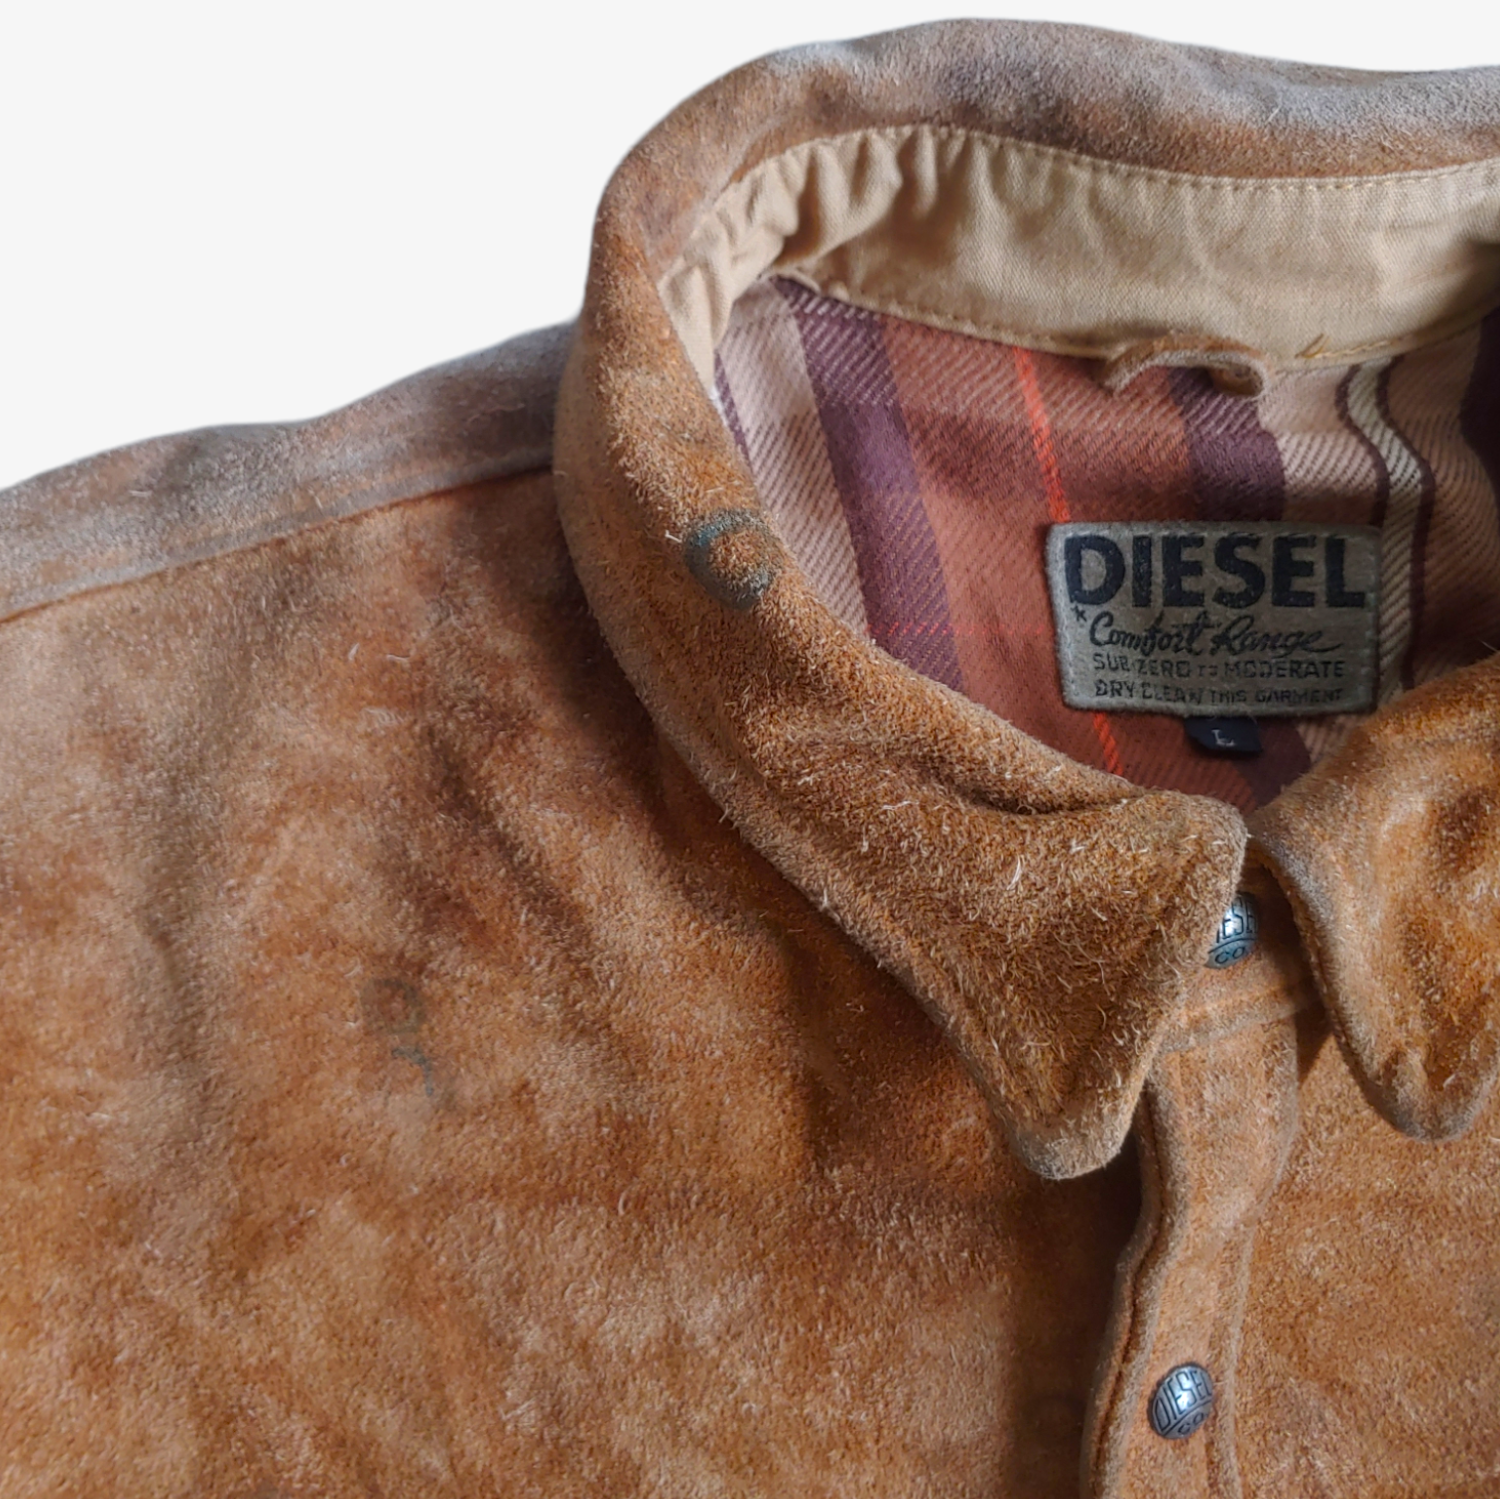 Vintage 1980s Diesel Comfort Range Brown Suede Leather Shirt Jacket Shacket Collar - Casspios Dream